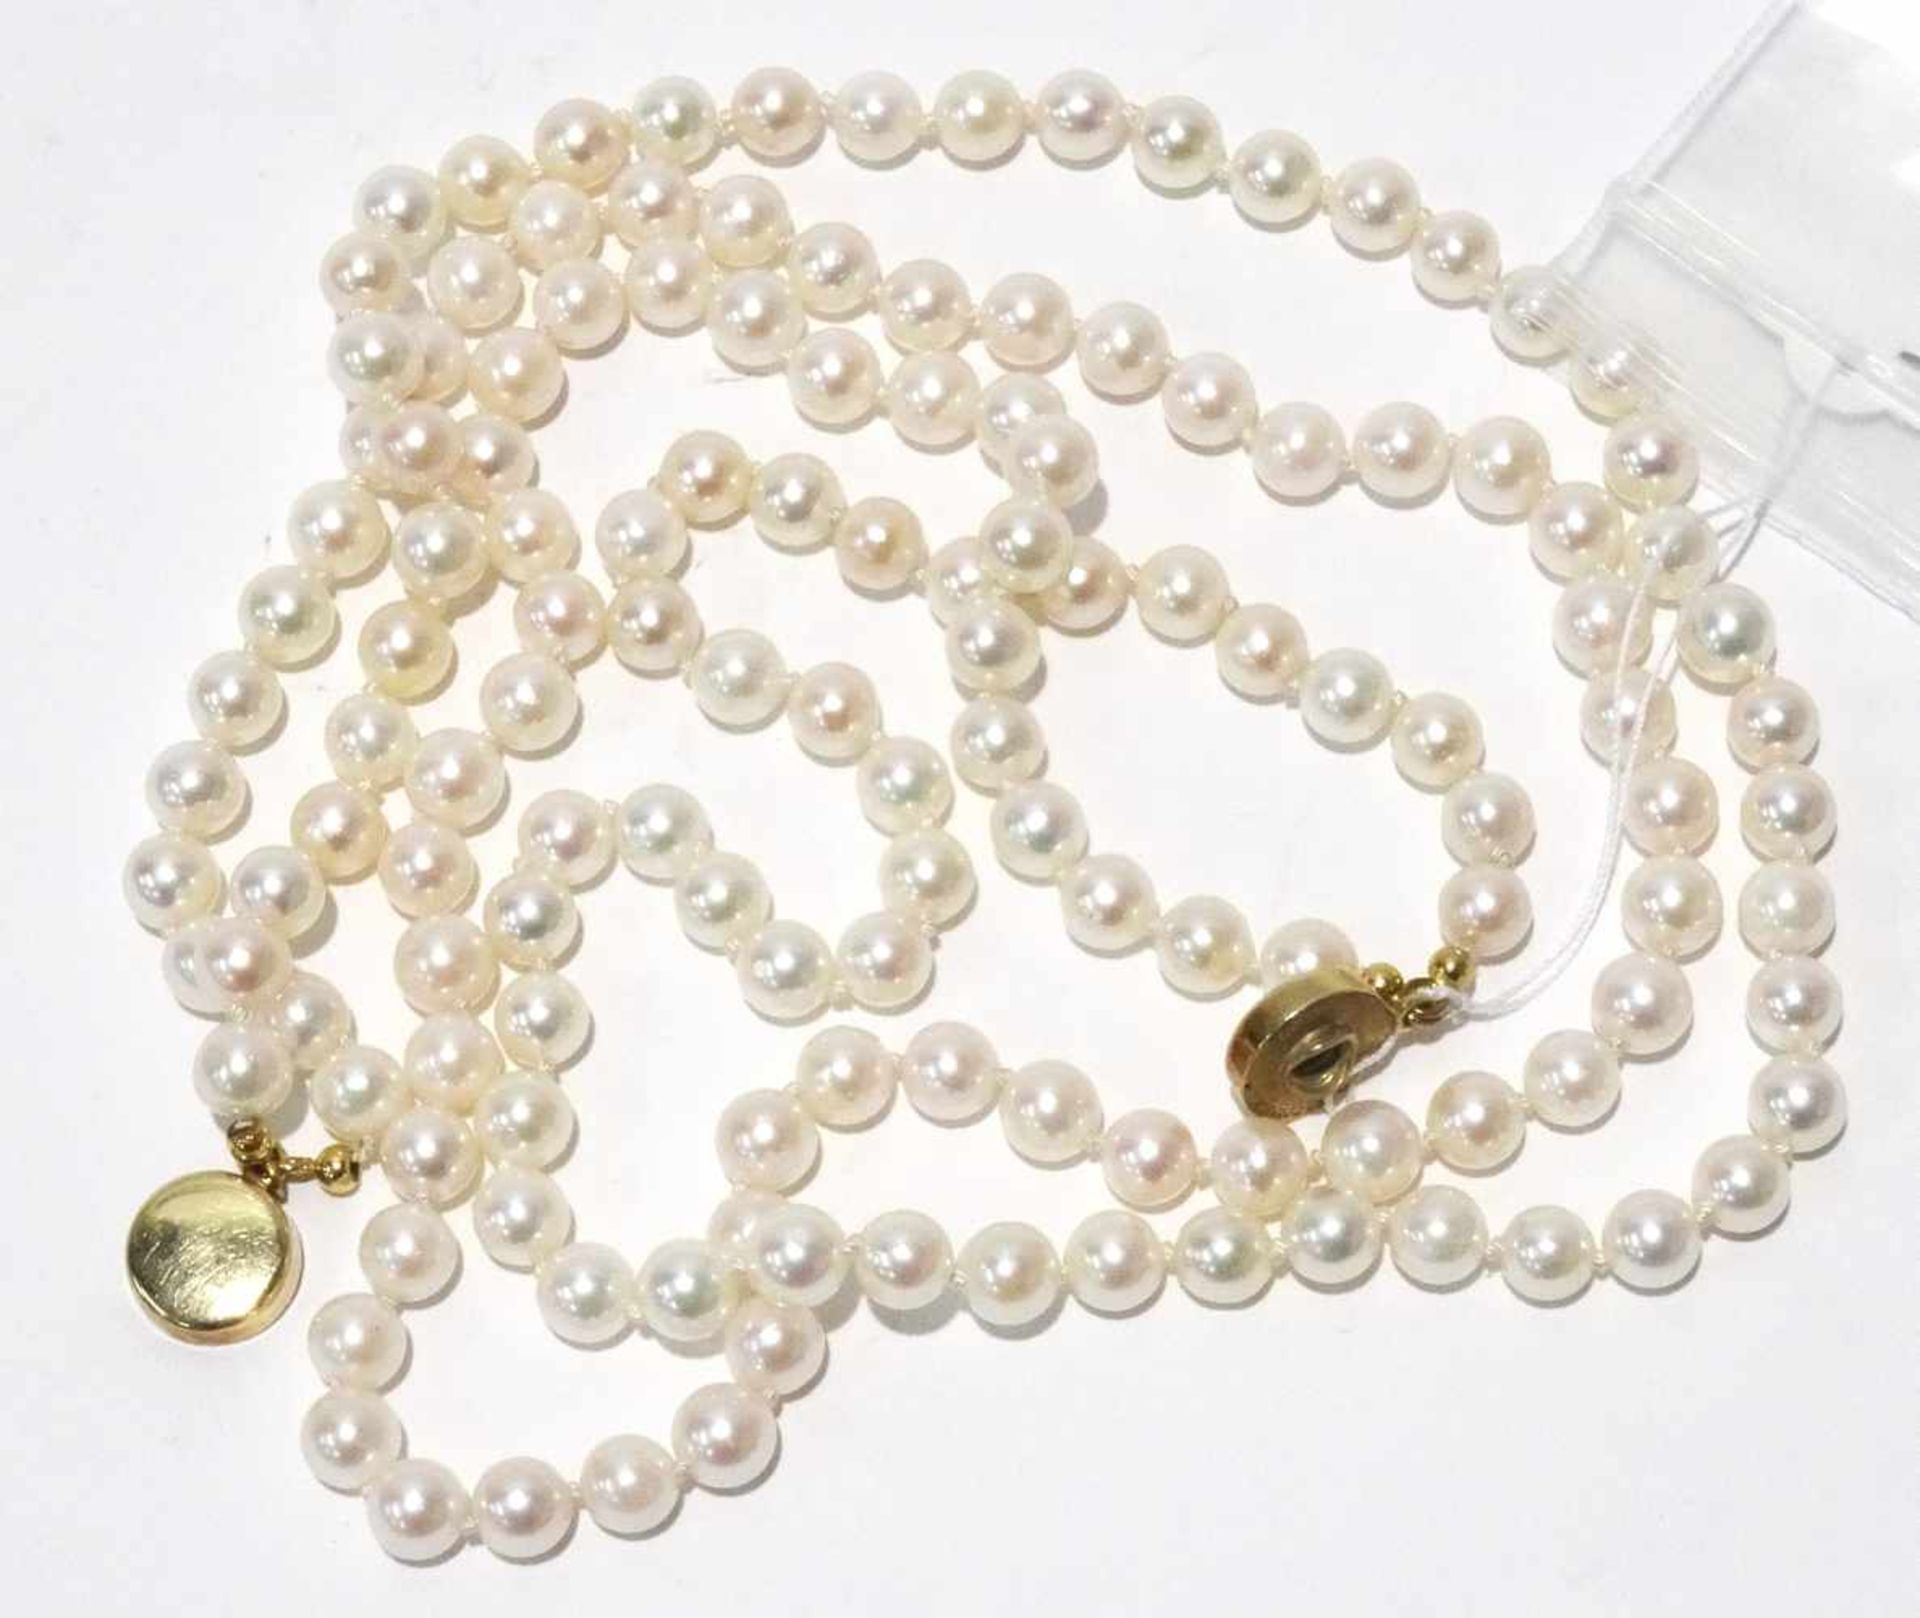 Zuchtperlenkette 2 reihig mit Perlen Durchmesser ca. 6mm, Farbe weiß bis rose, sehr feines Lüster, - Bild 3 aus 3